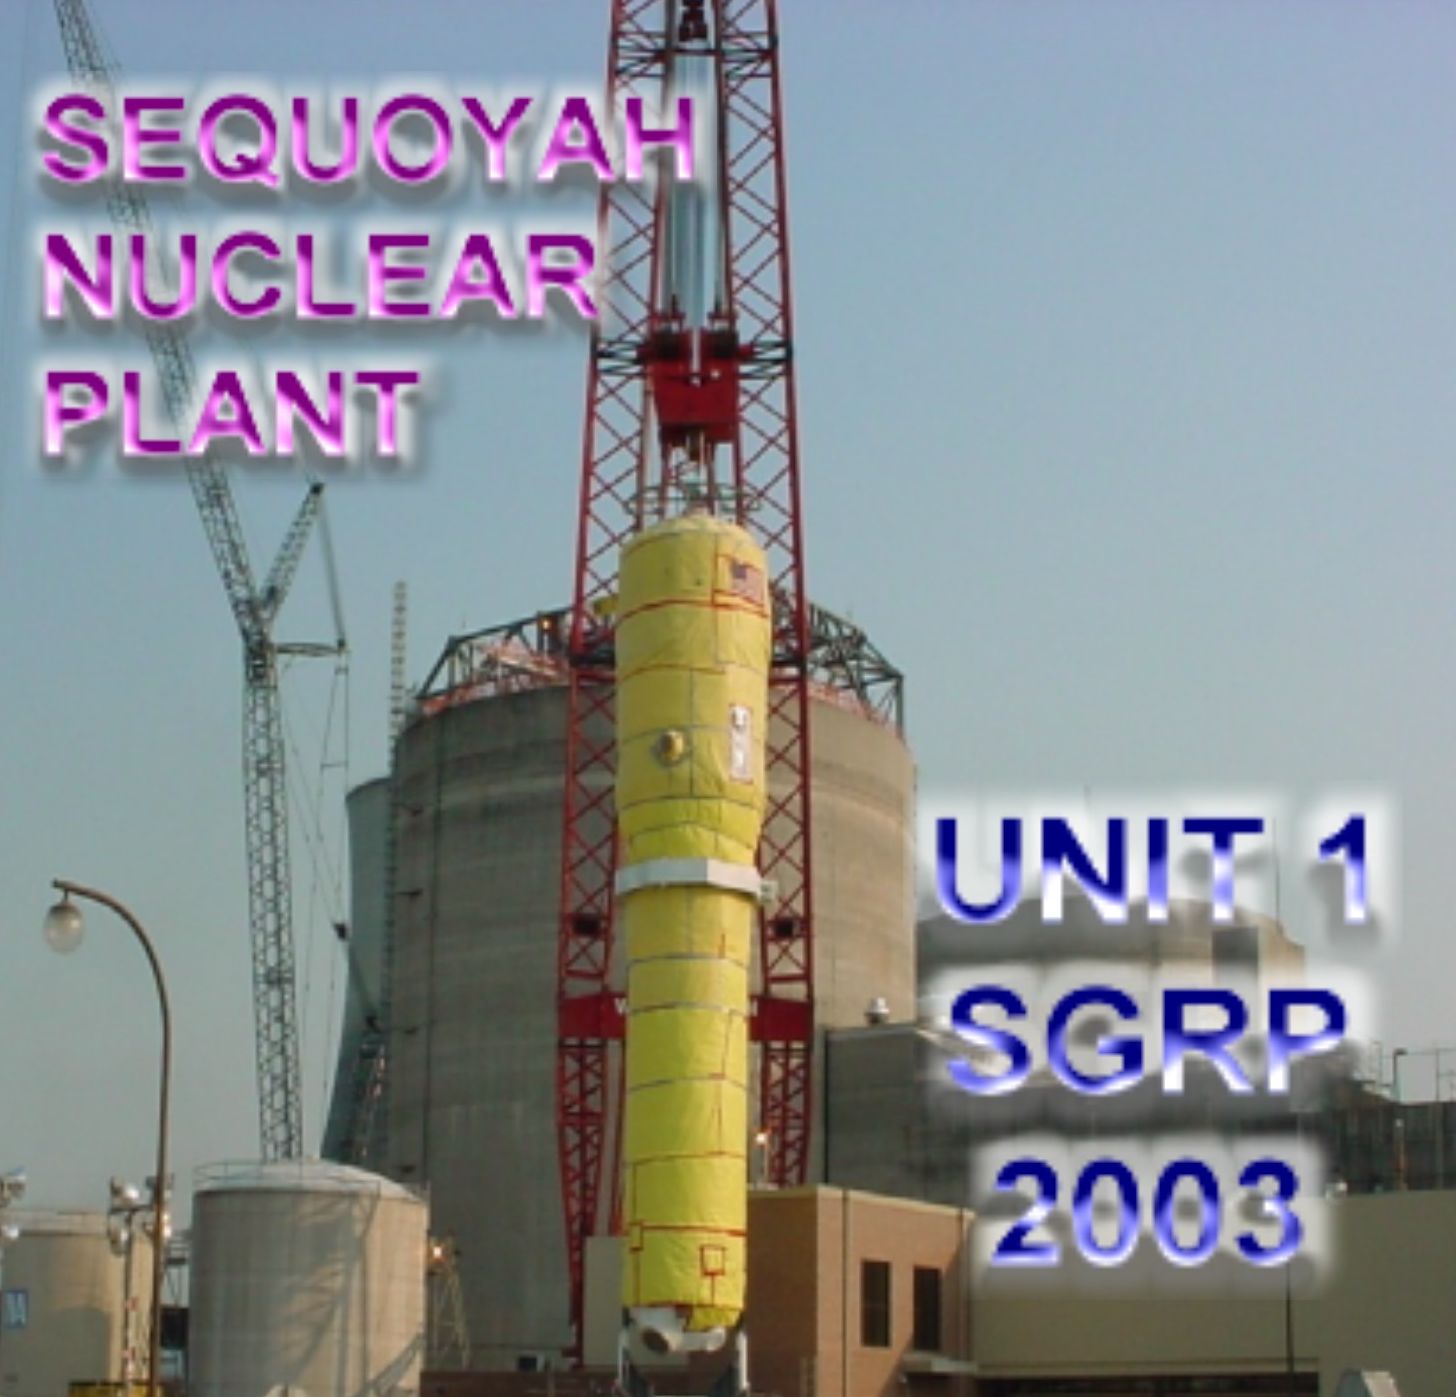 Sequoyah Unit 1 SGRP
Keywords: Sequoyah SGRP Sequoyah Nuclear Power Plant